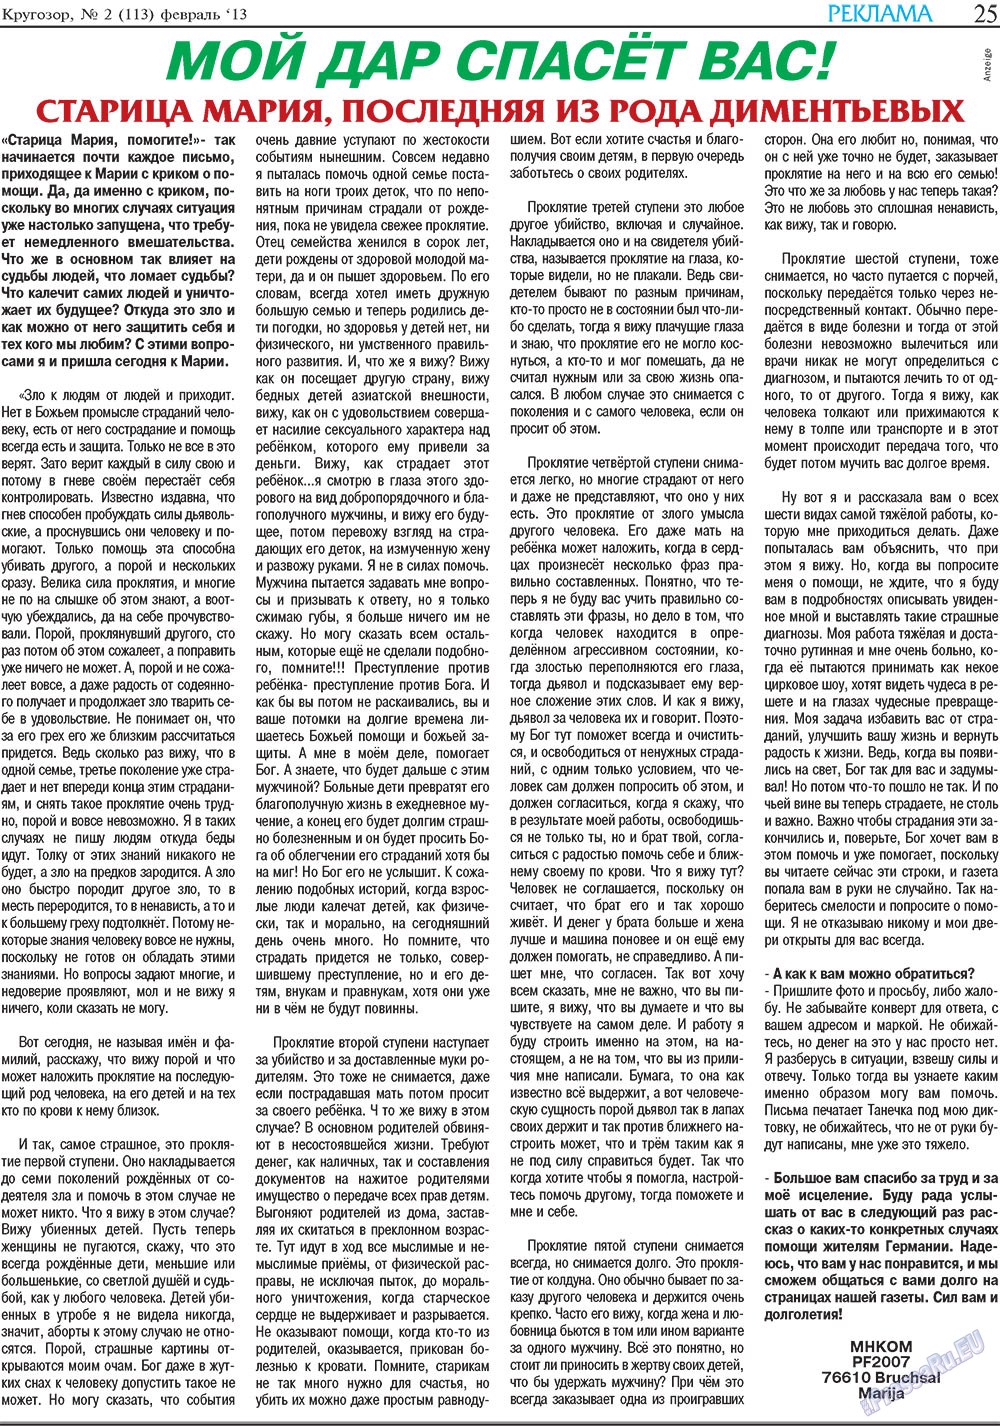 Кругозор, газета. 2013 №2 стр.25